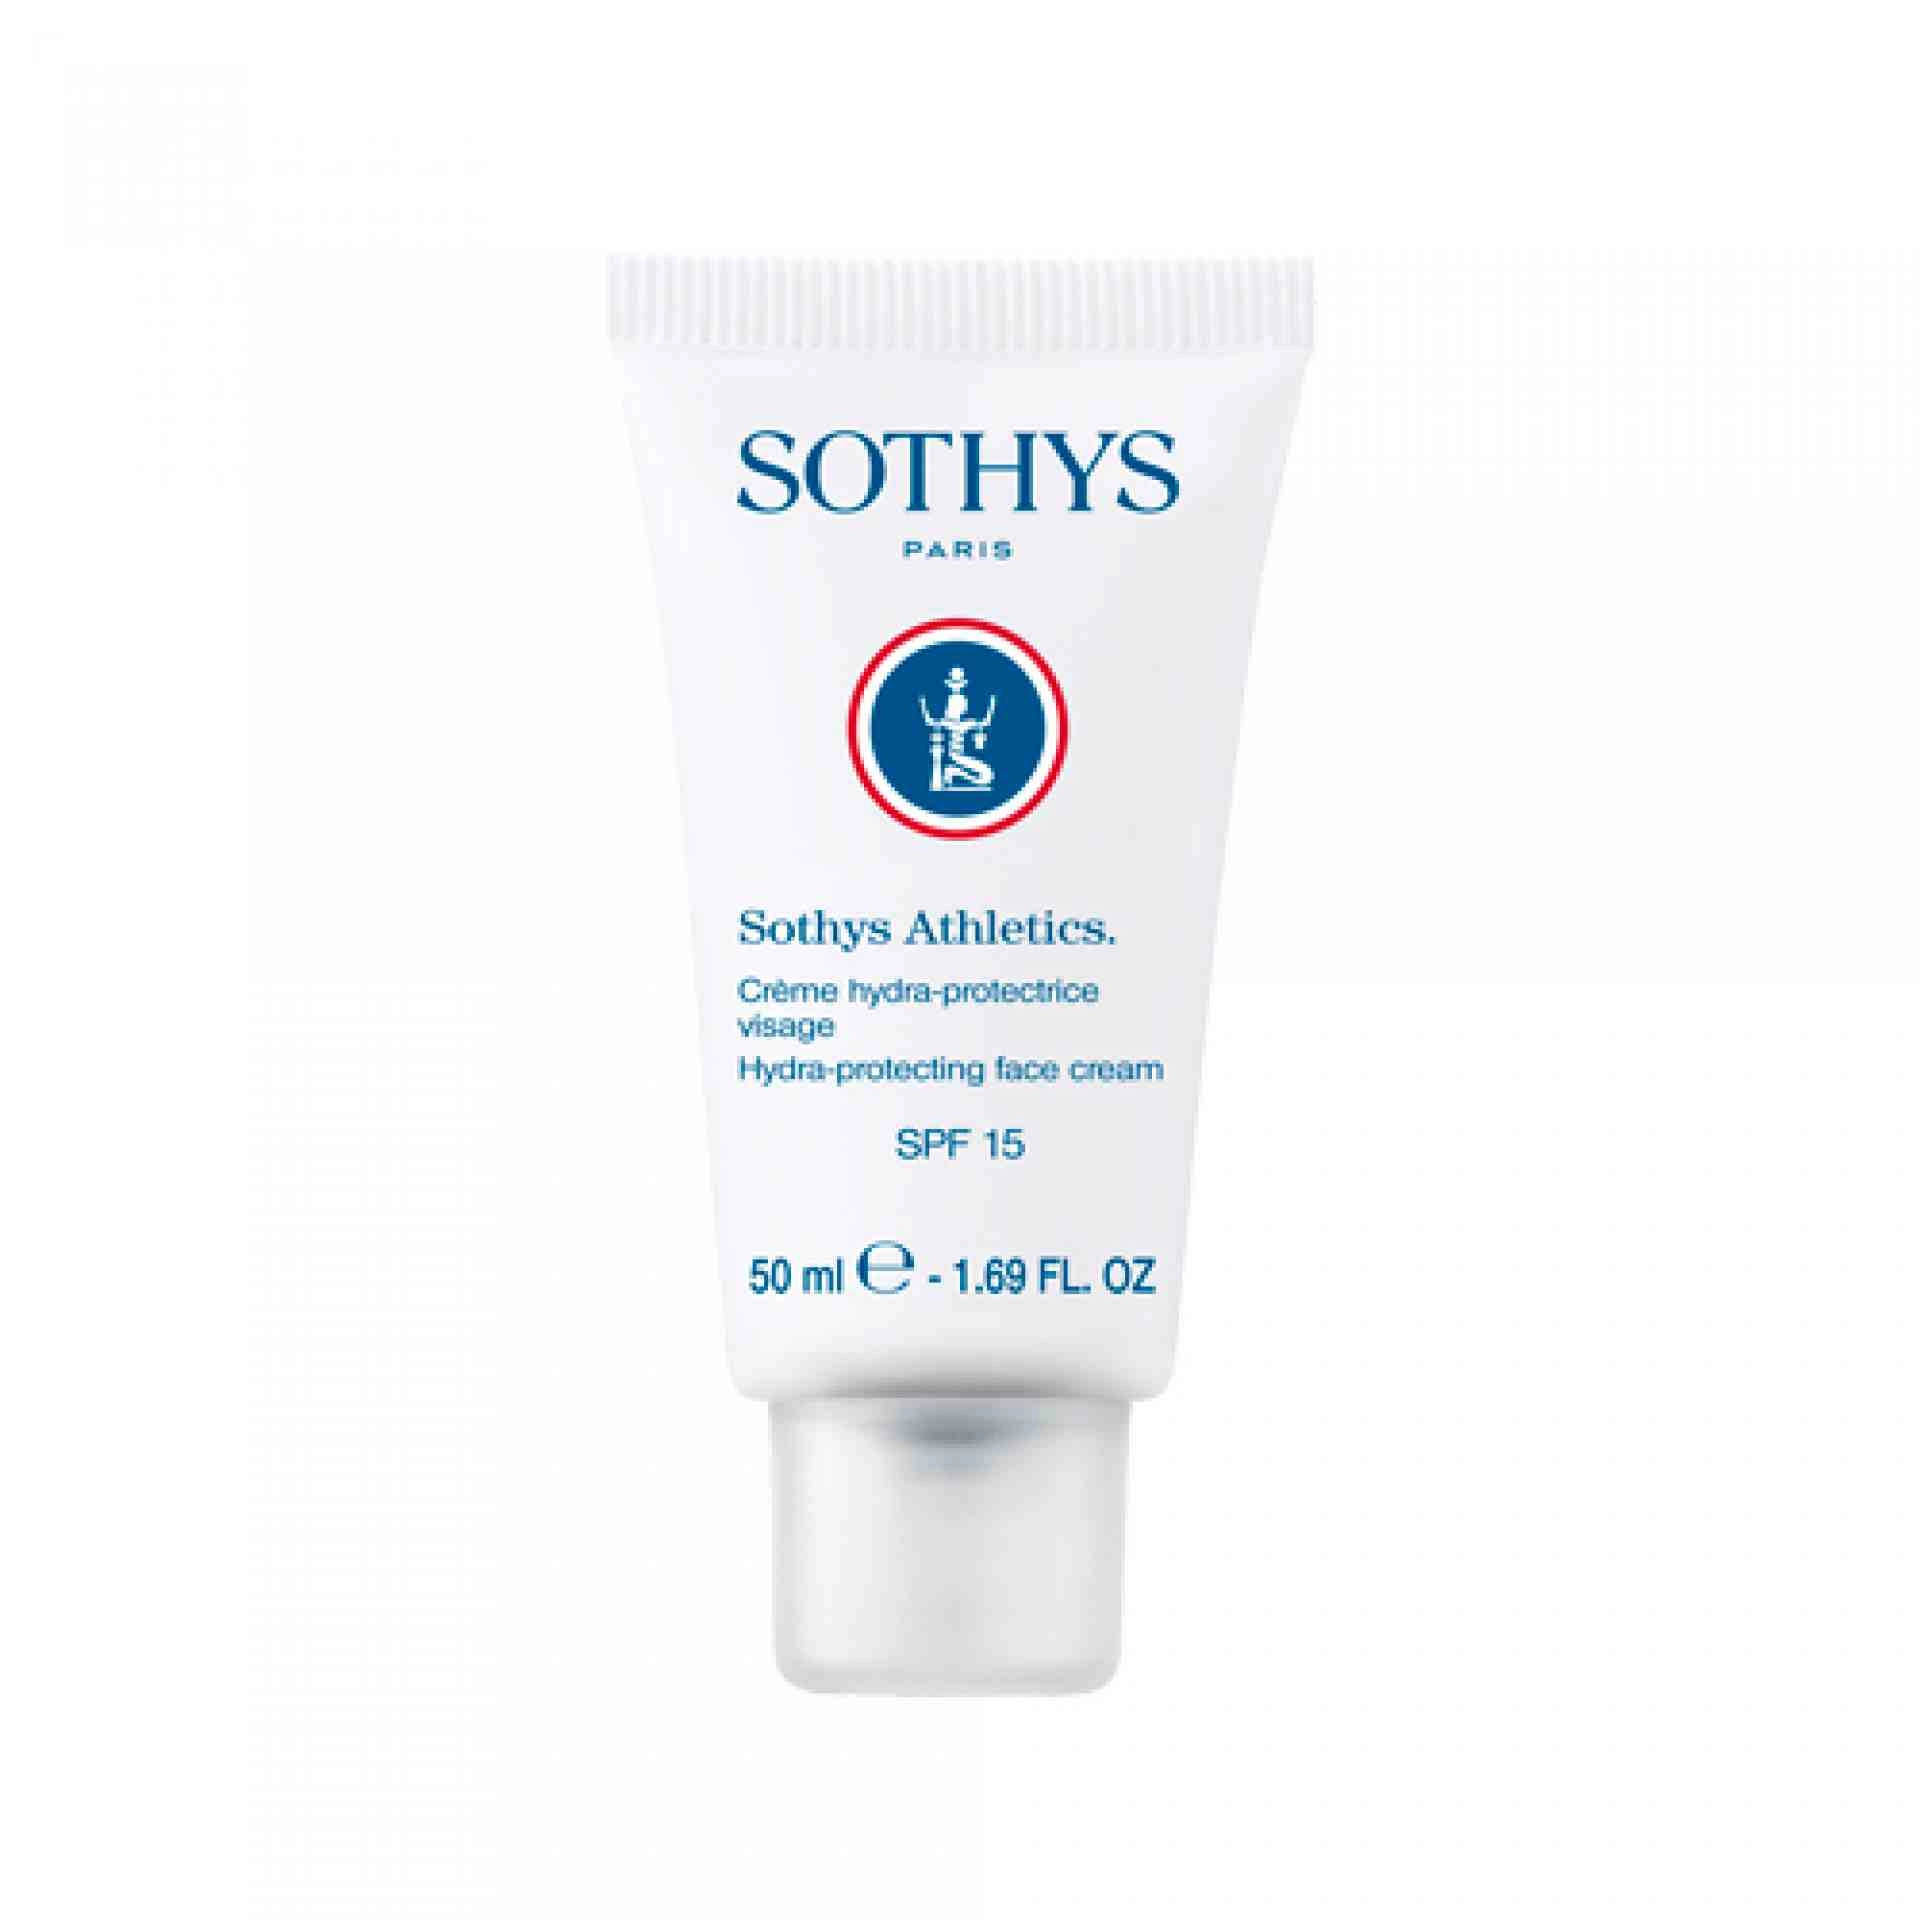 Crème Hydra-protective Visage SPF15 | Crema protectora 50ml - Sothys Athletics - Sothys ®